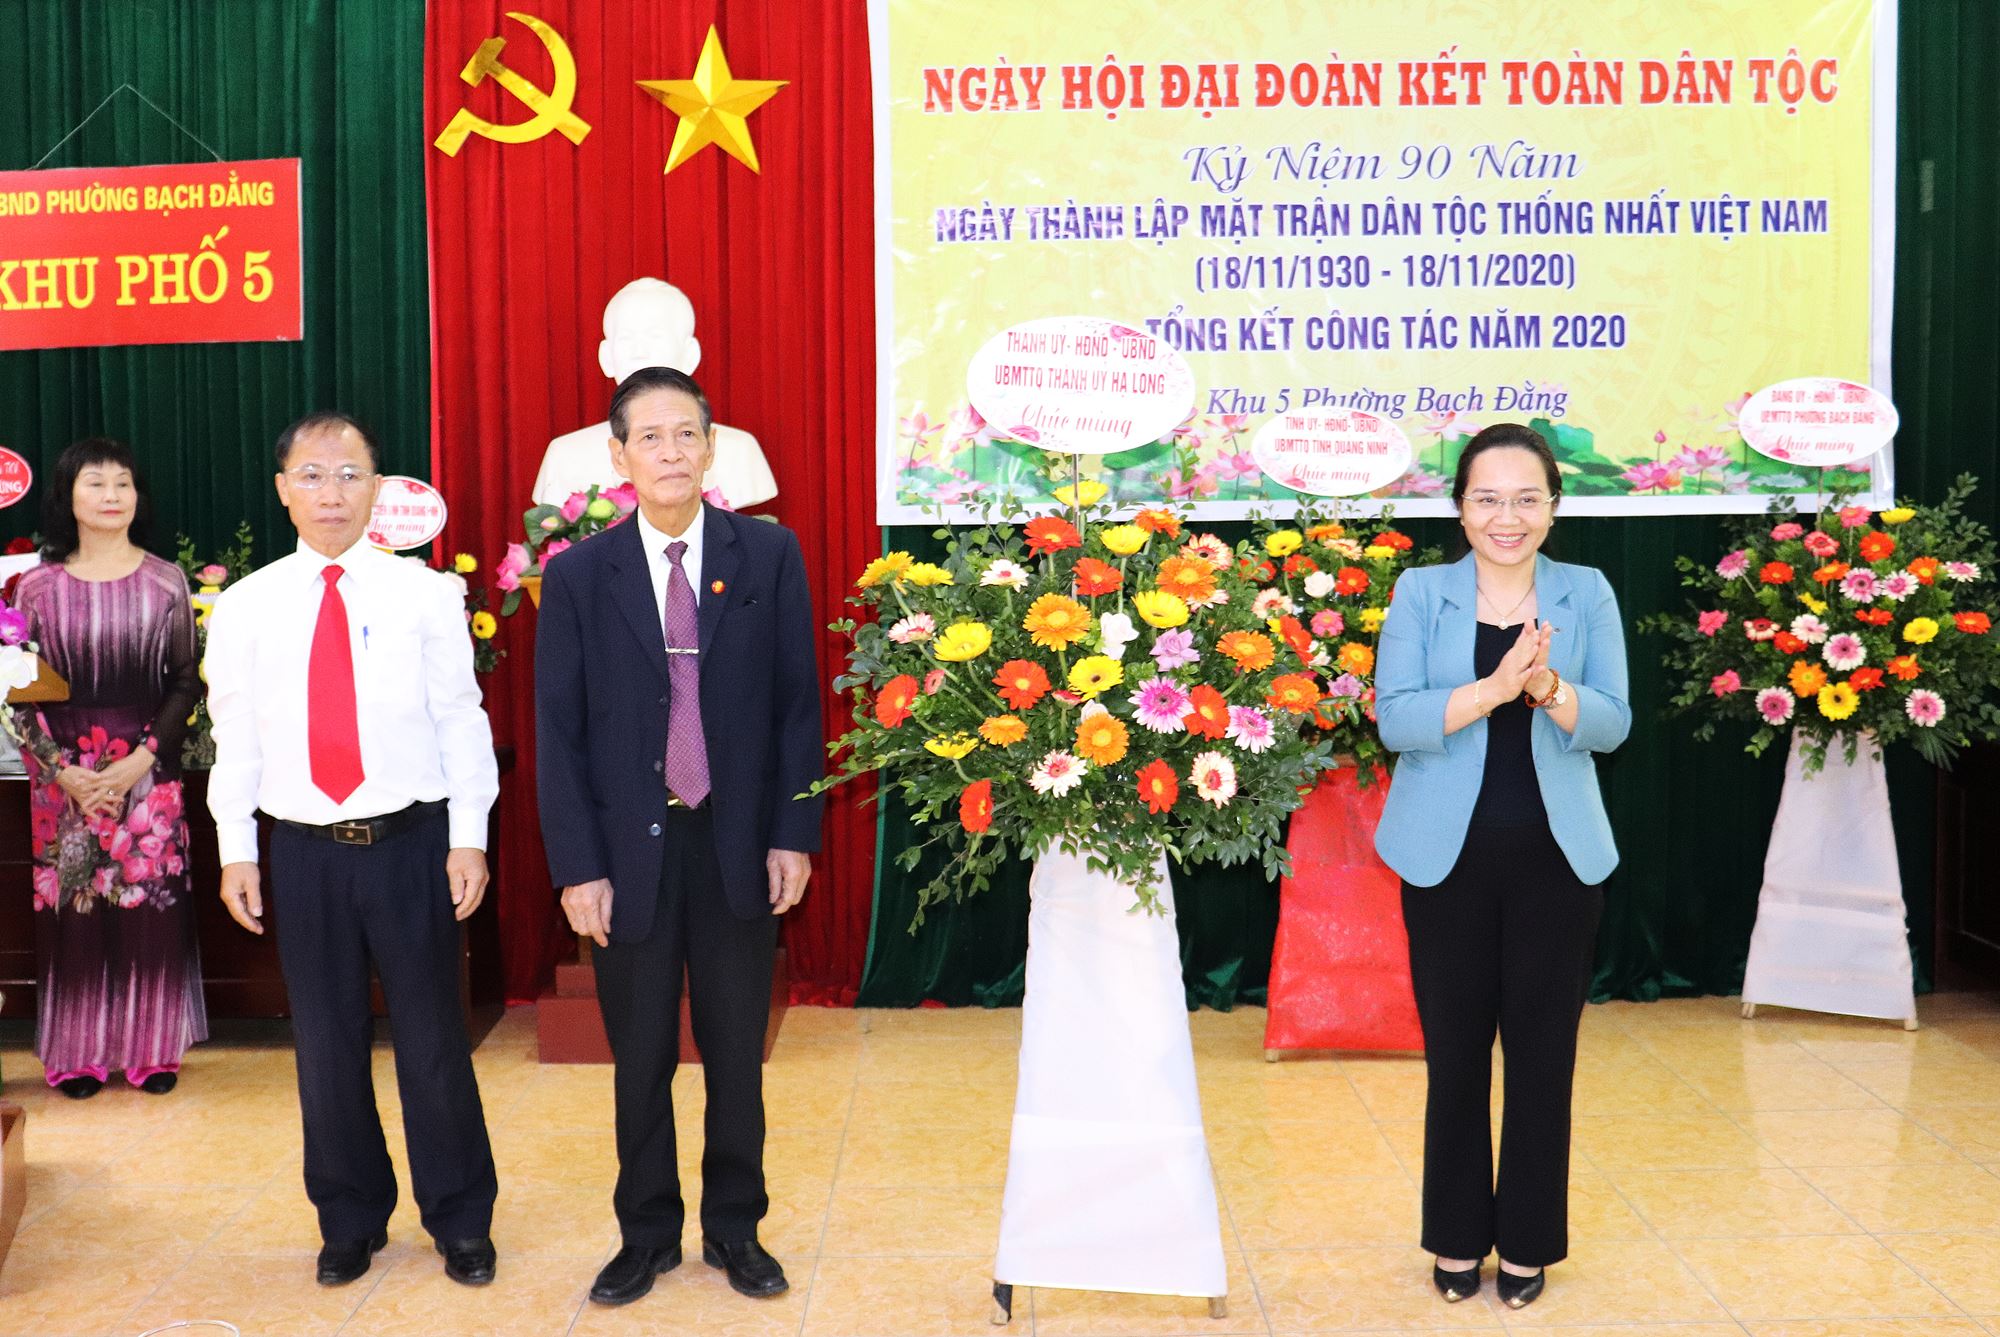 Lãnh đạo TP Hạ Long tặng hoa chúc mừng Ngày hội Đại đoàn kết năm 2020 tại khu phố 5, phường Bạch Đằng, TP Hạ Long. 